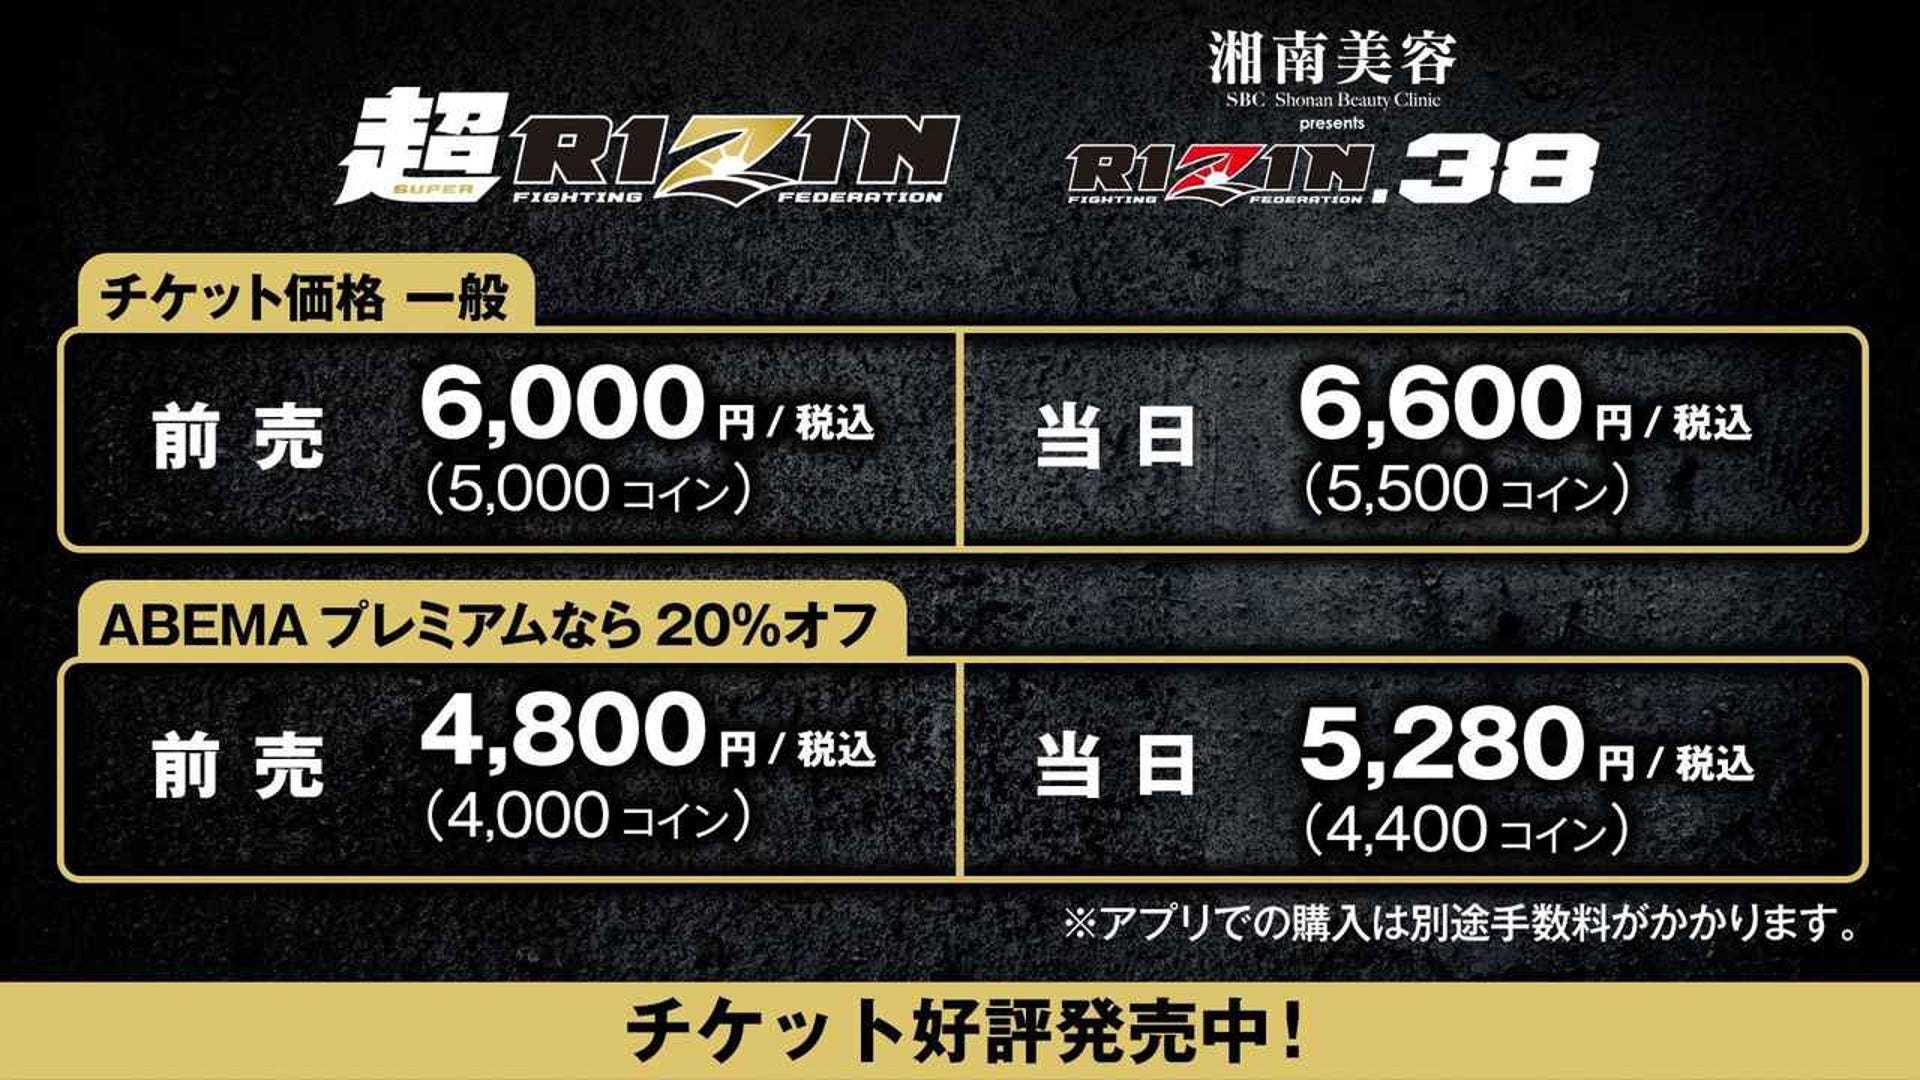 朝倉未来vsメイウェザーのチケット販売価格 購入方法は 超rizin Goal Com 日本